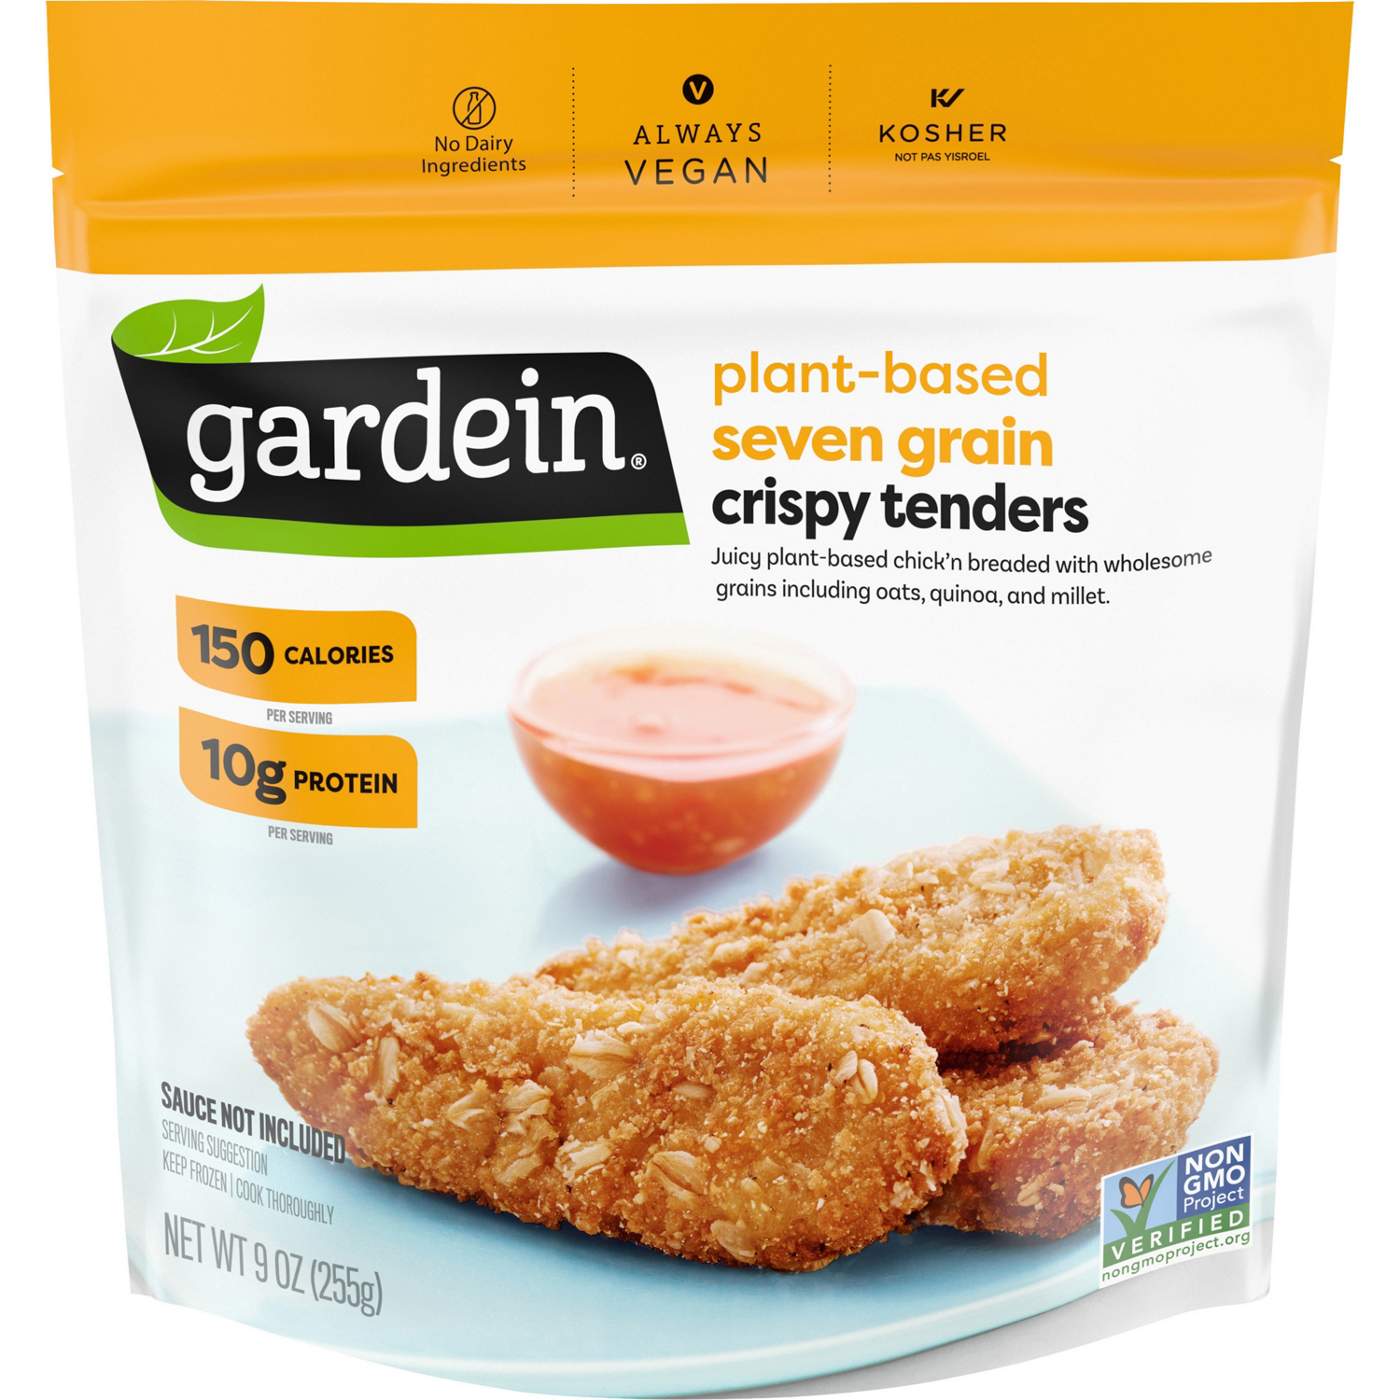 Gardein Vegan Frozen Seven Grain Crispy Plant-Based Chick'n Tenders; image 1 of 5